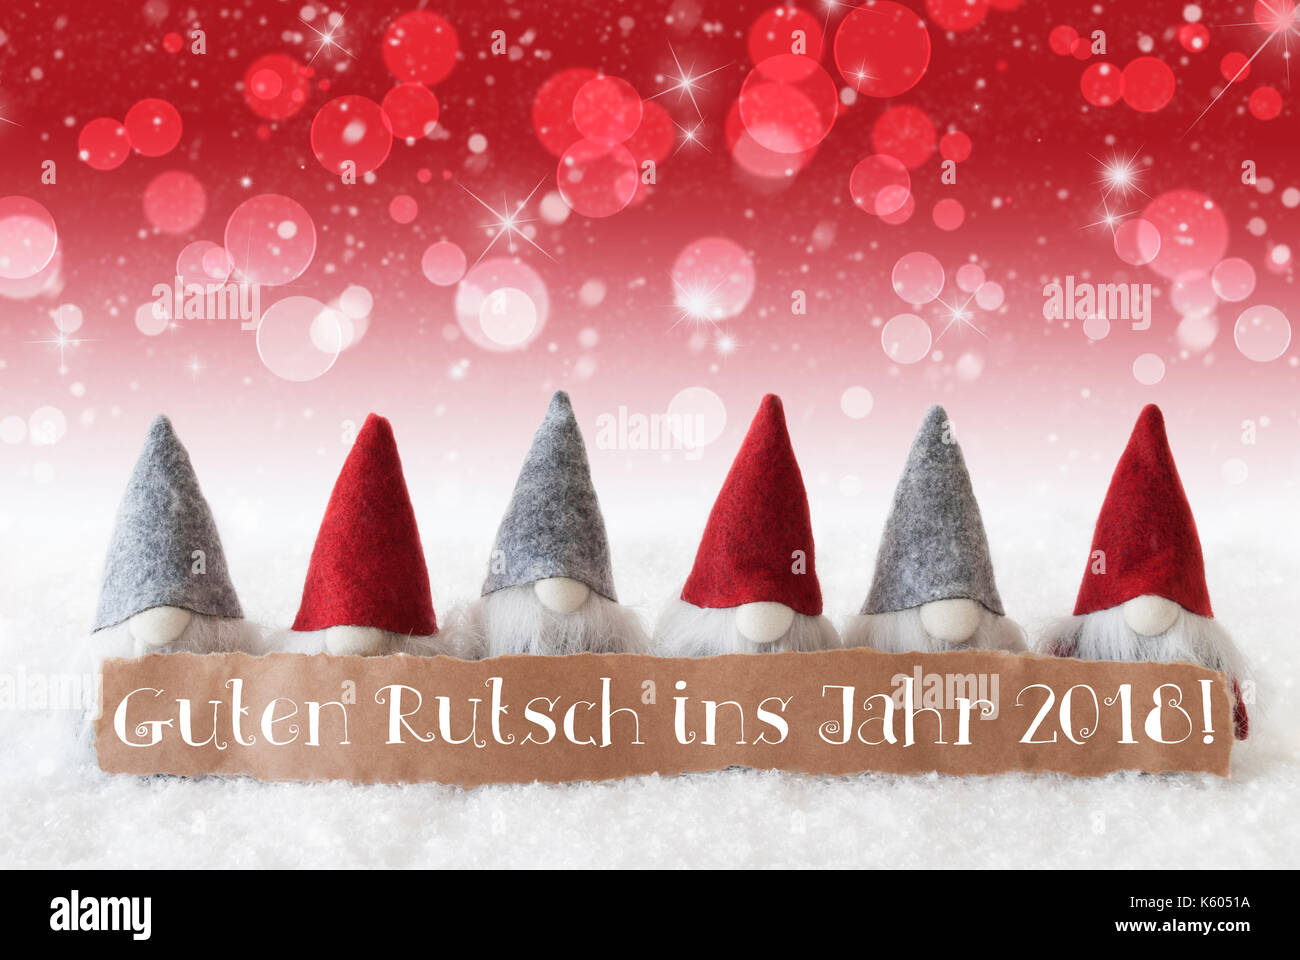 Les gnomes, bokeh rouge, étoile, guten rutsch 2018 signifie nouvelle année Banque D'Images